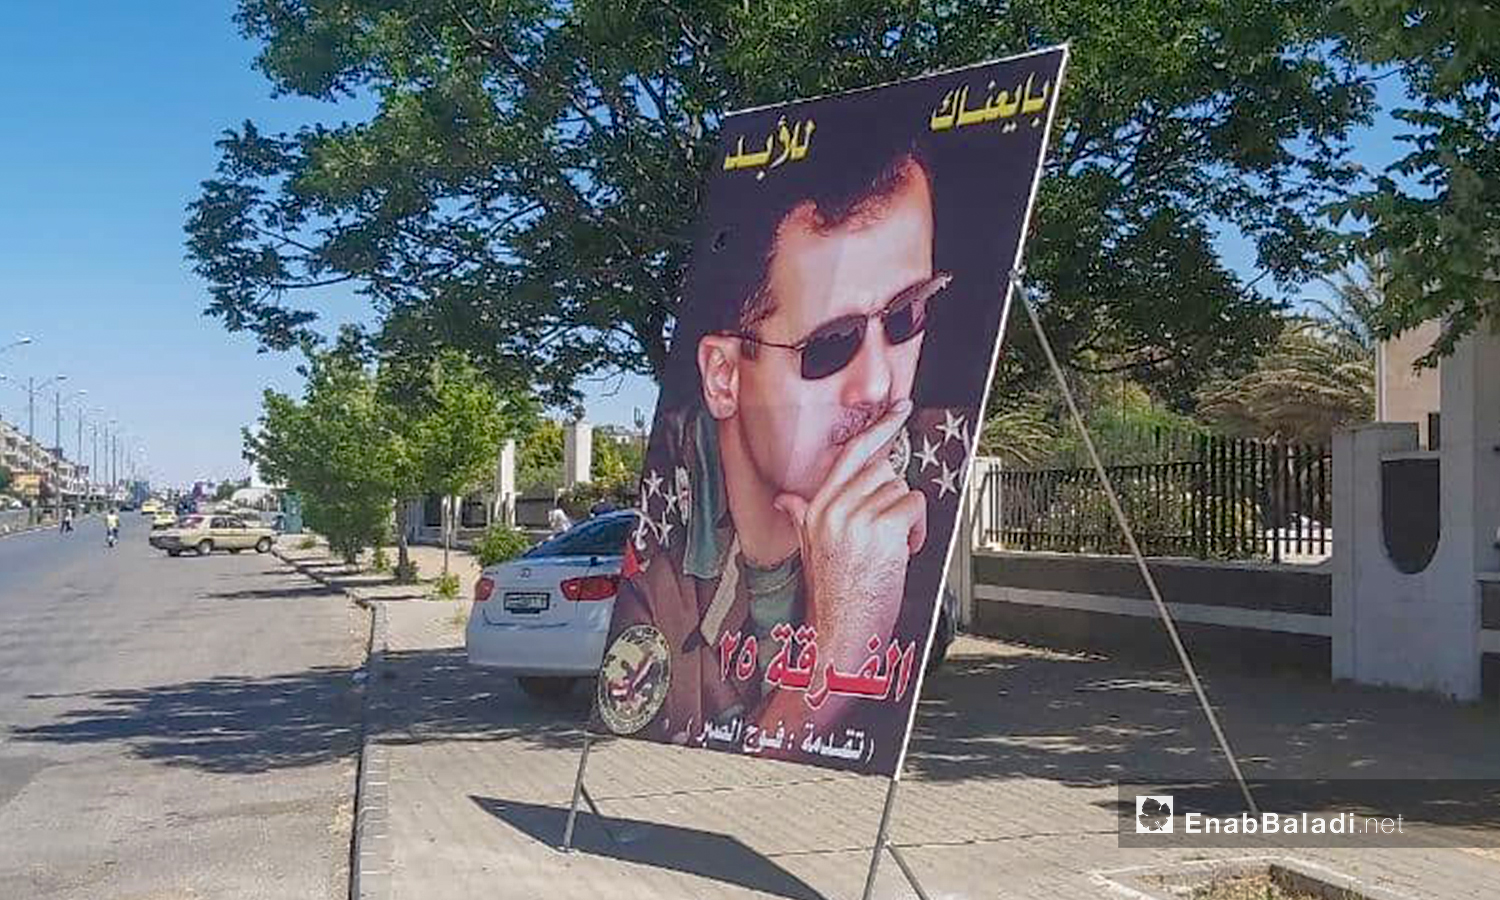 لافتة تحمل صورة رئيس النظام السوري بشار الأسد تدعو المواطنين لإعادة انتخابه - 12 أيار 2021 (عنب بلدي/ عروة المنذر)